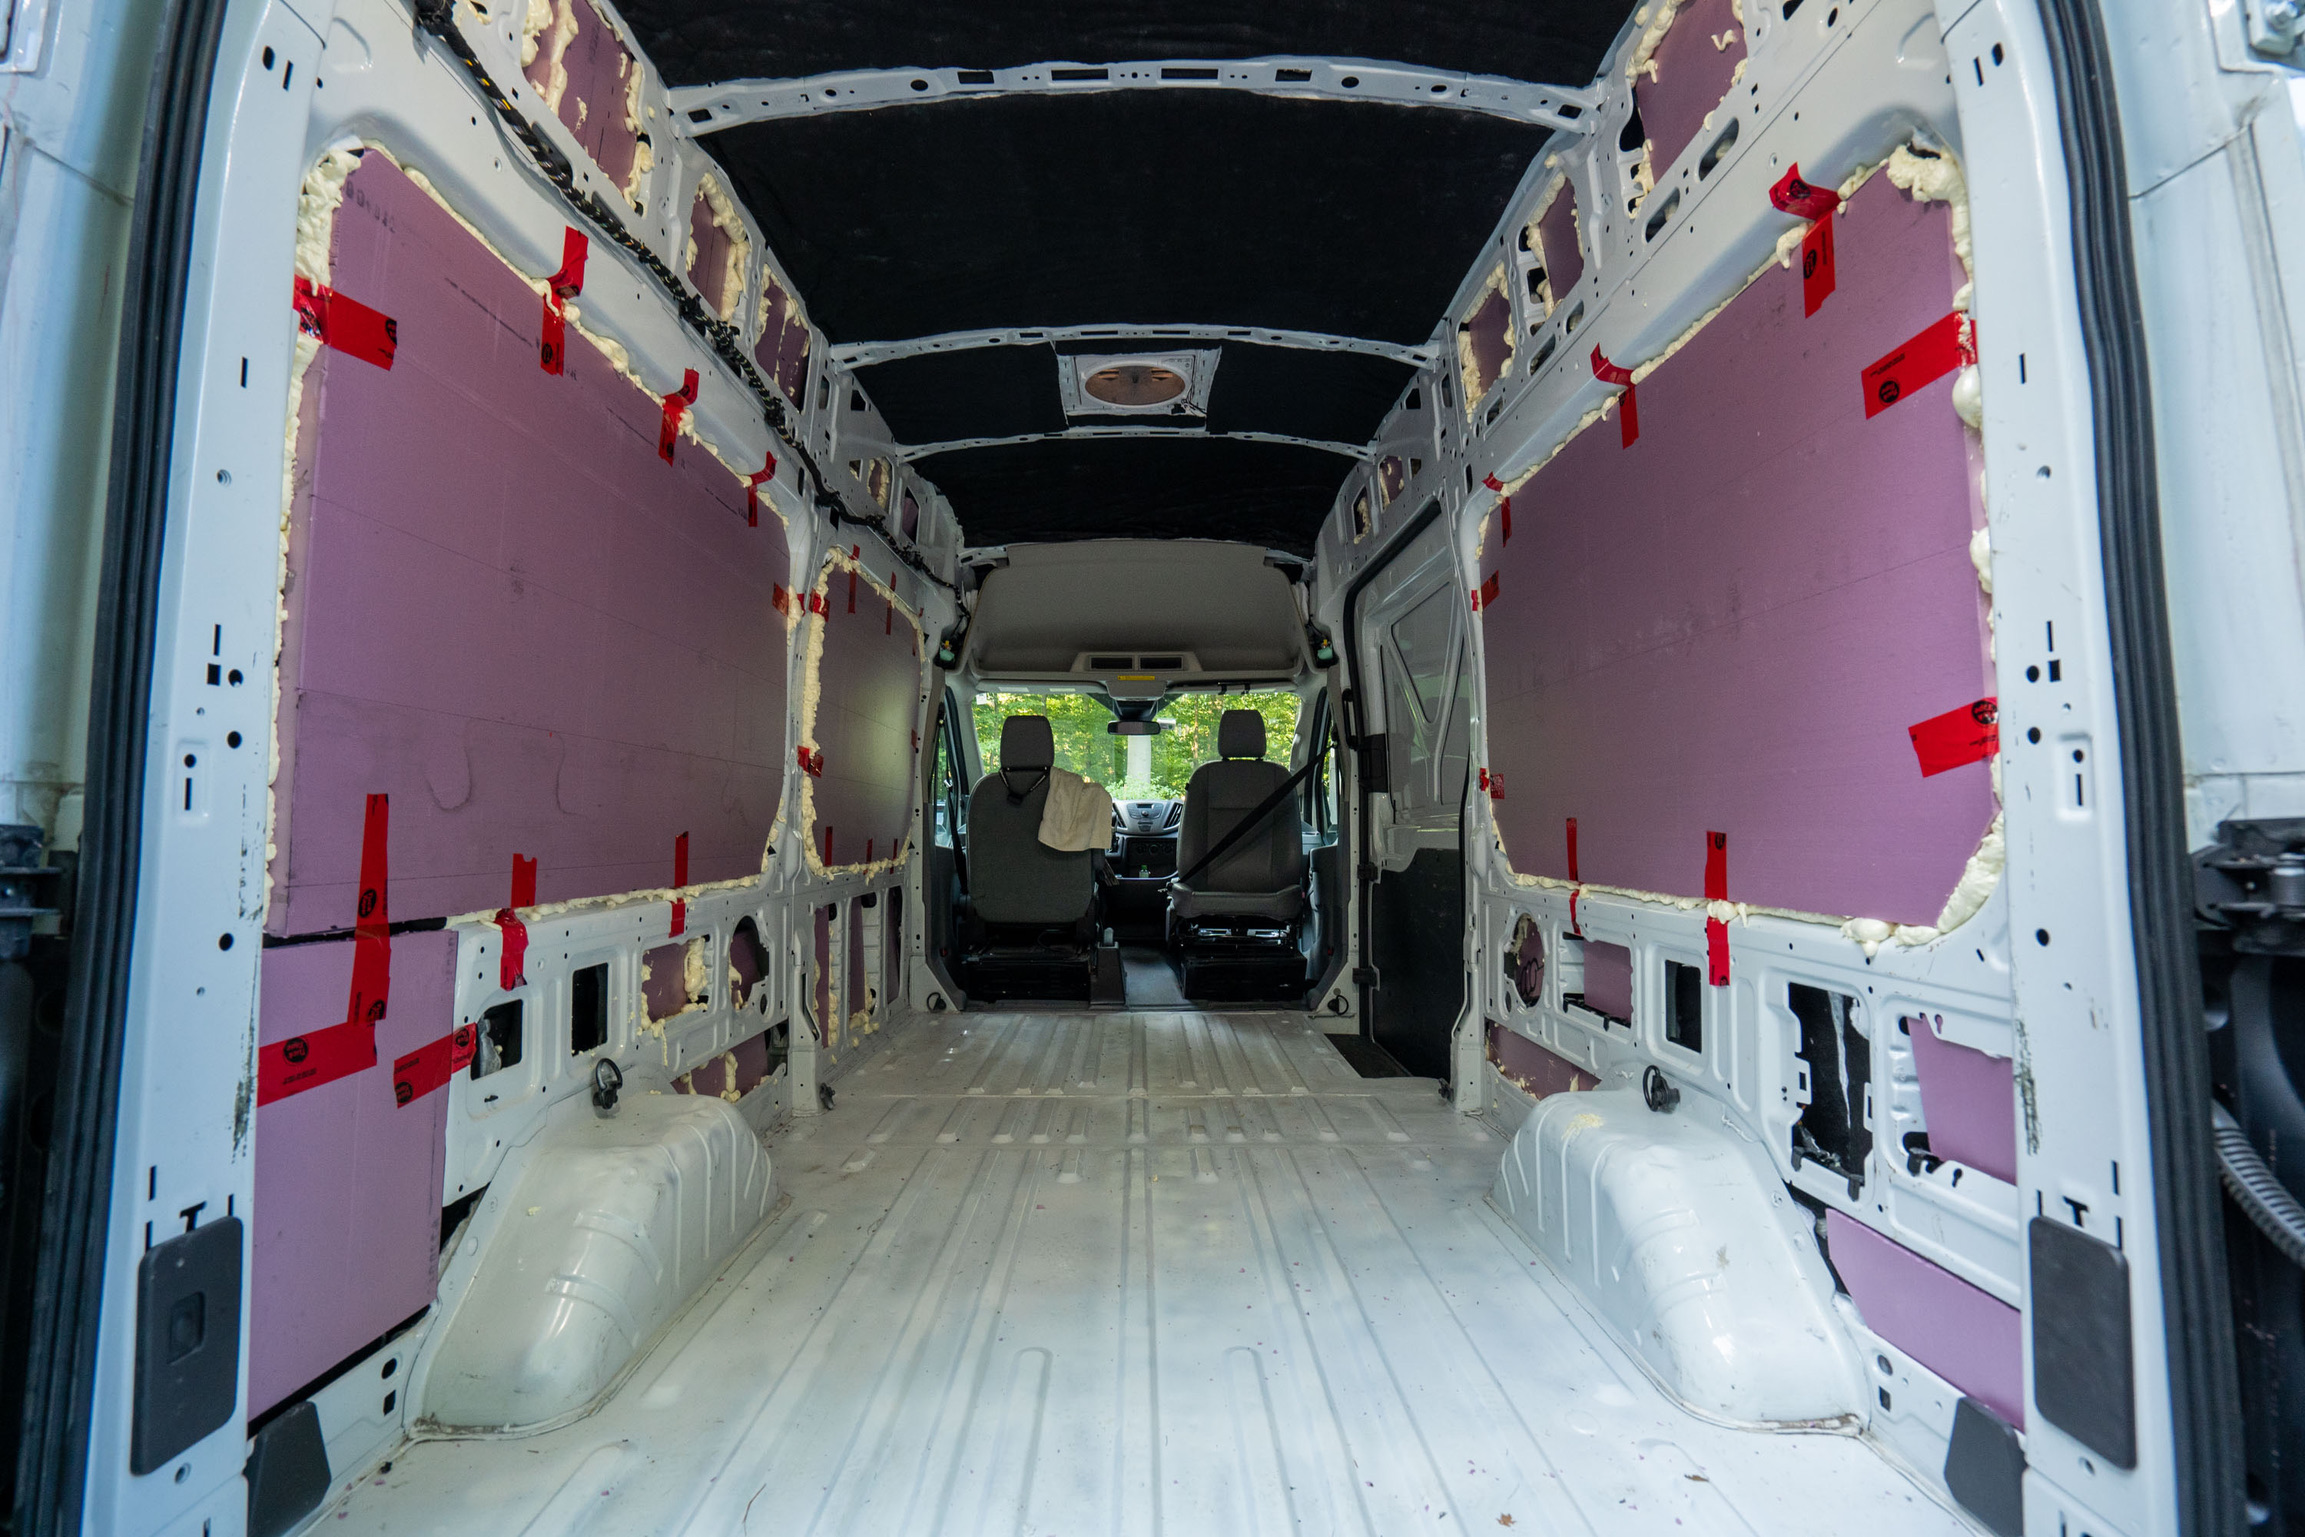 XPS foam board insulation in van